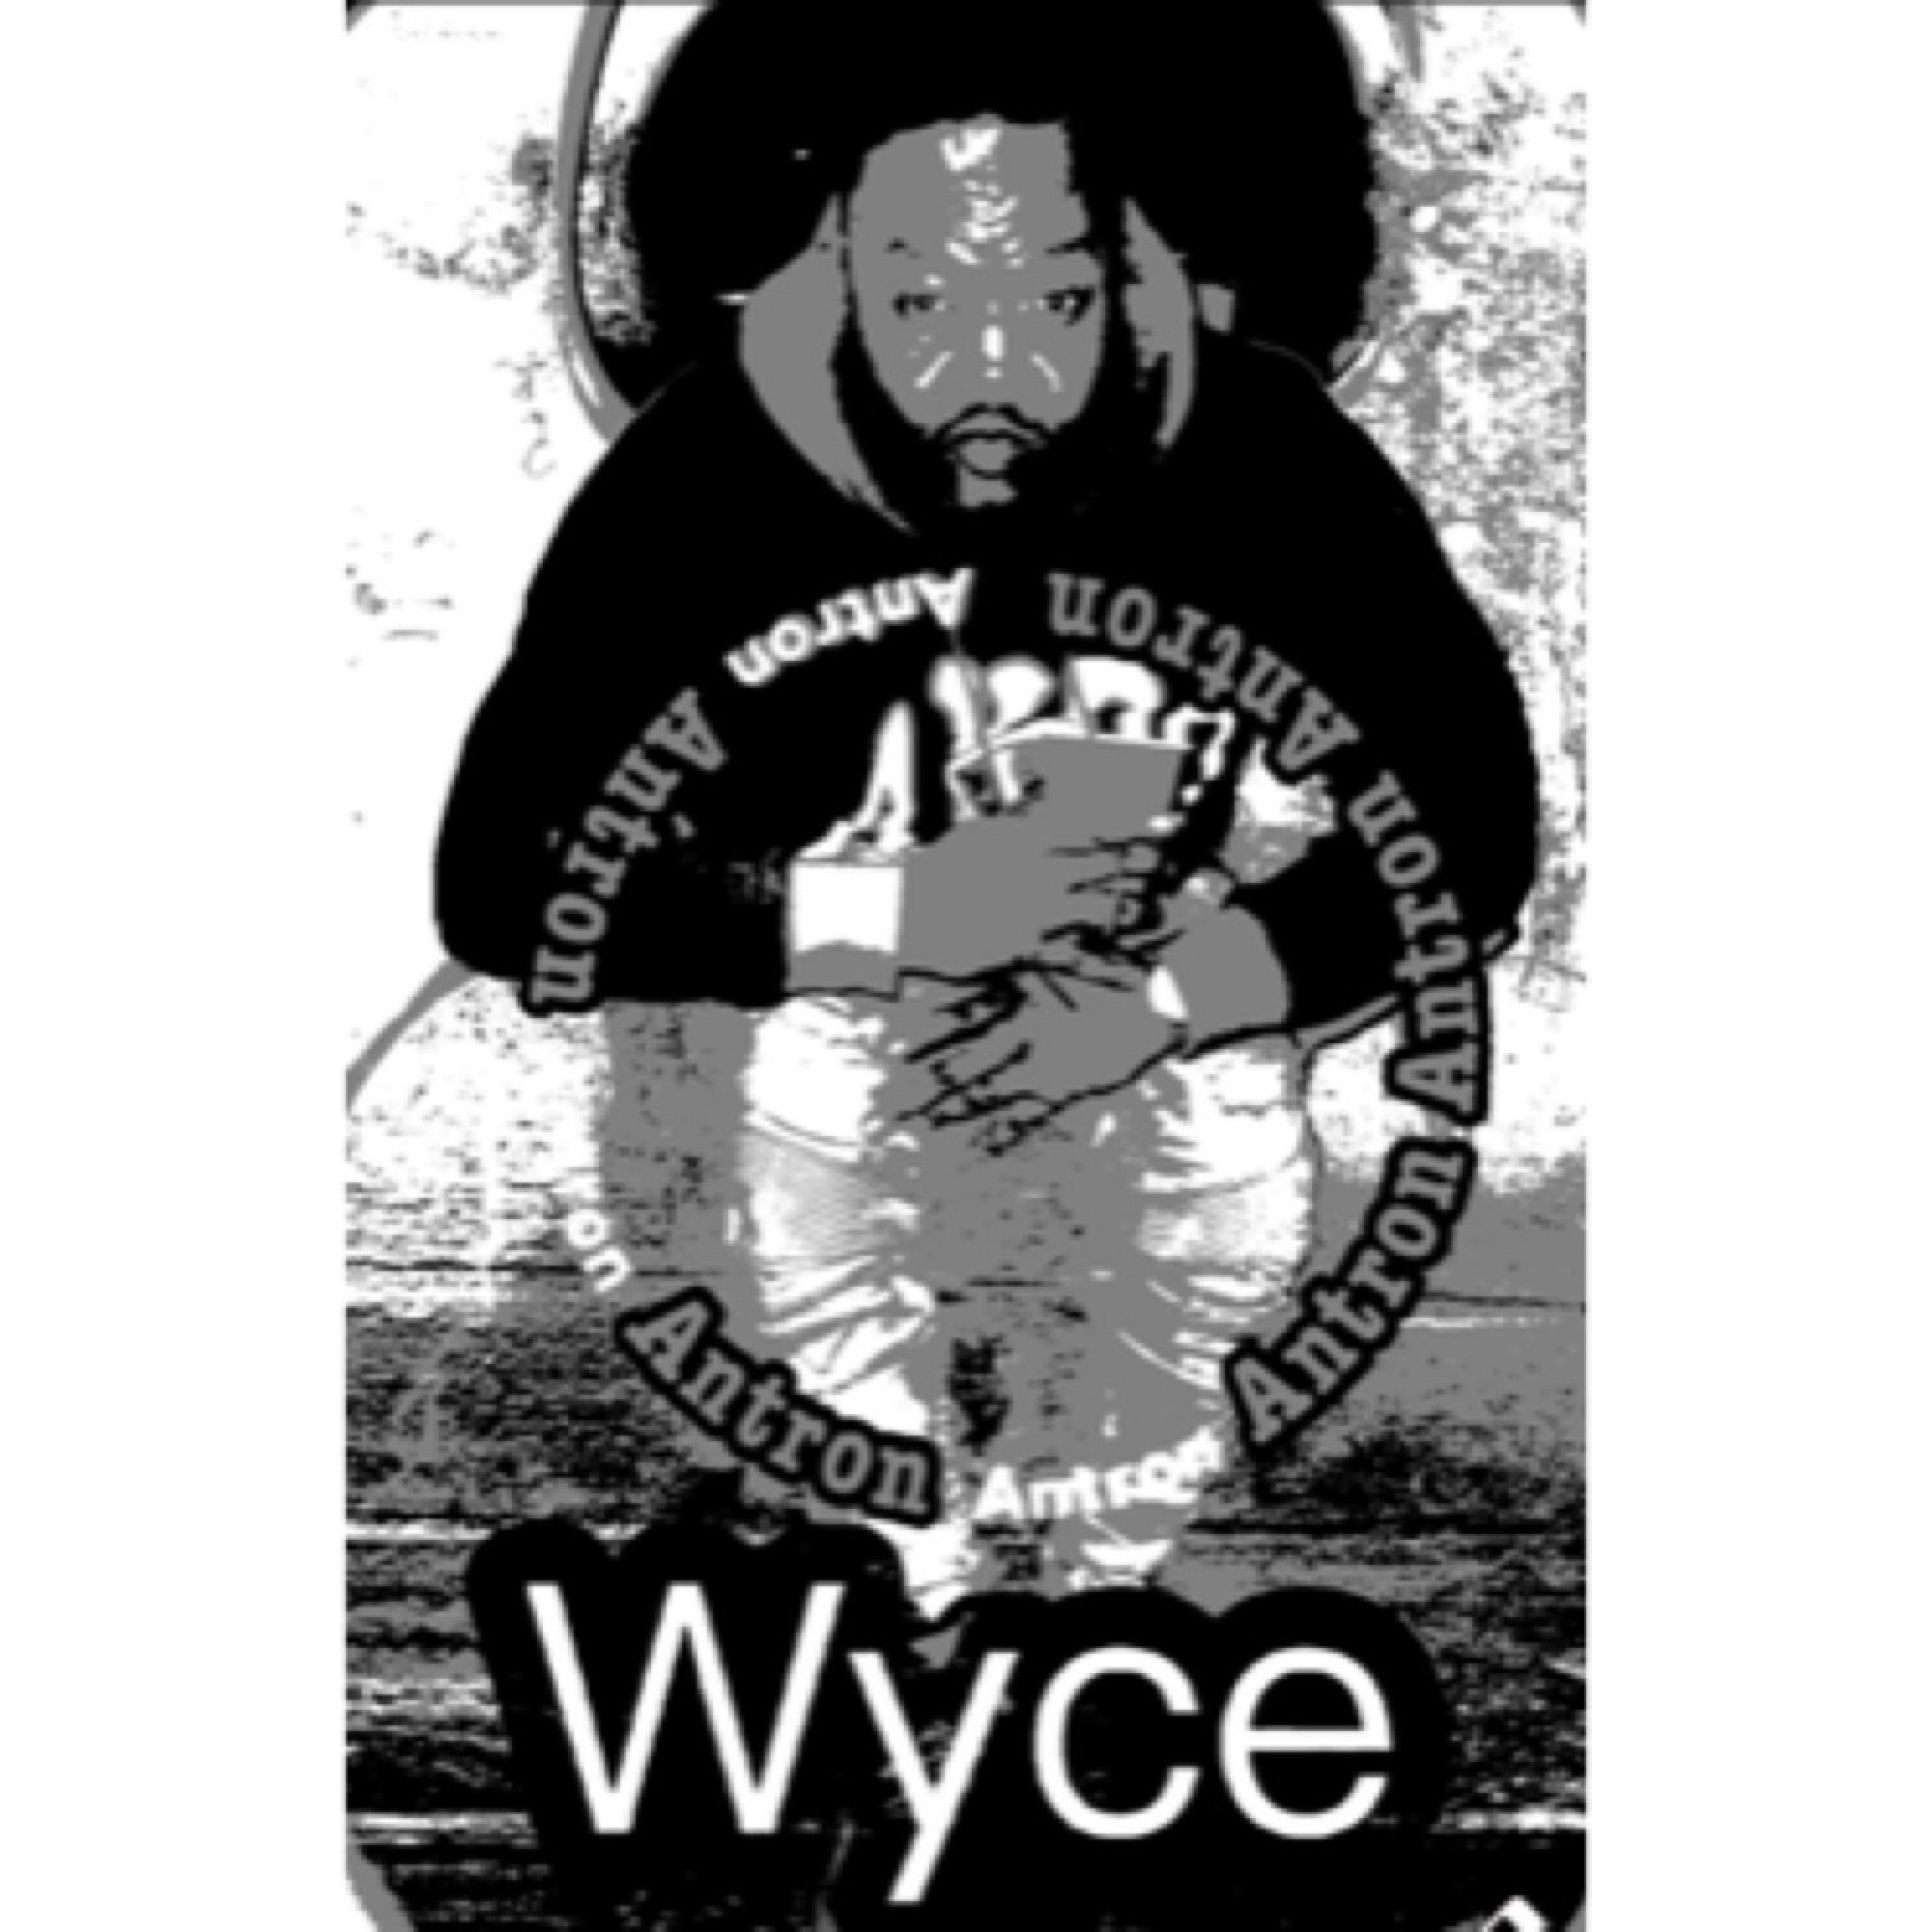 Wyce - Sometimes